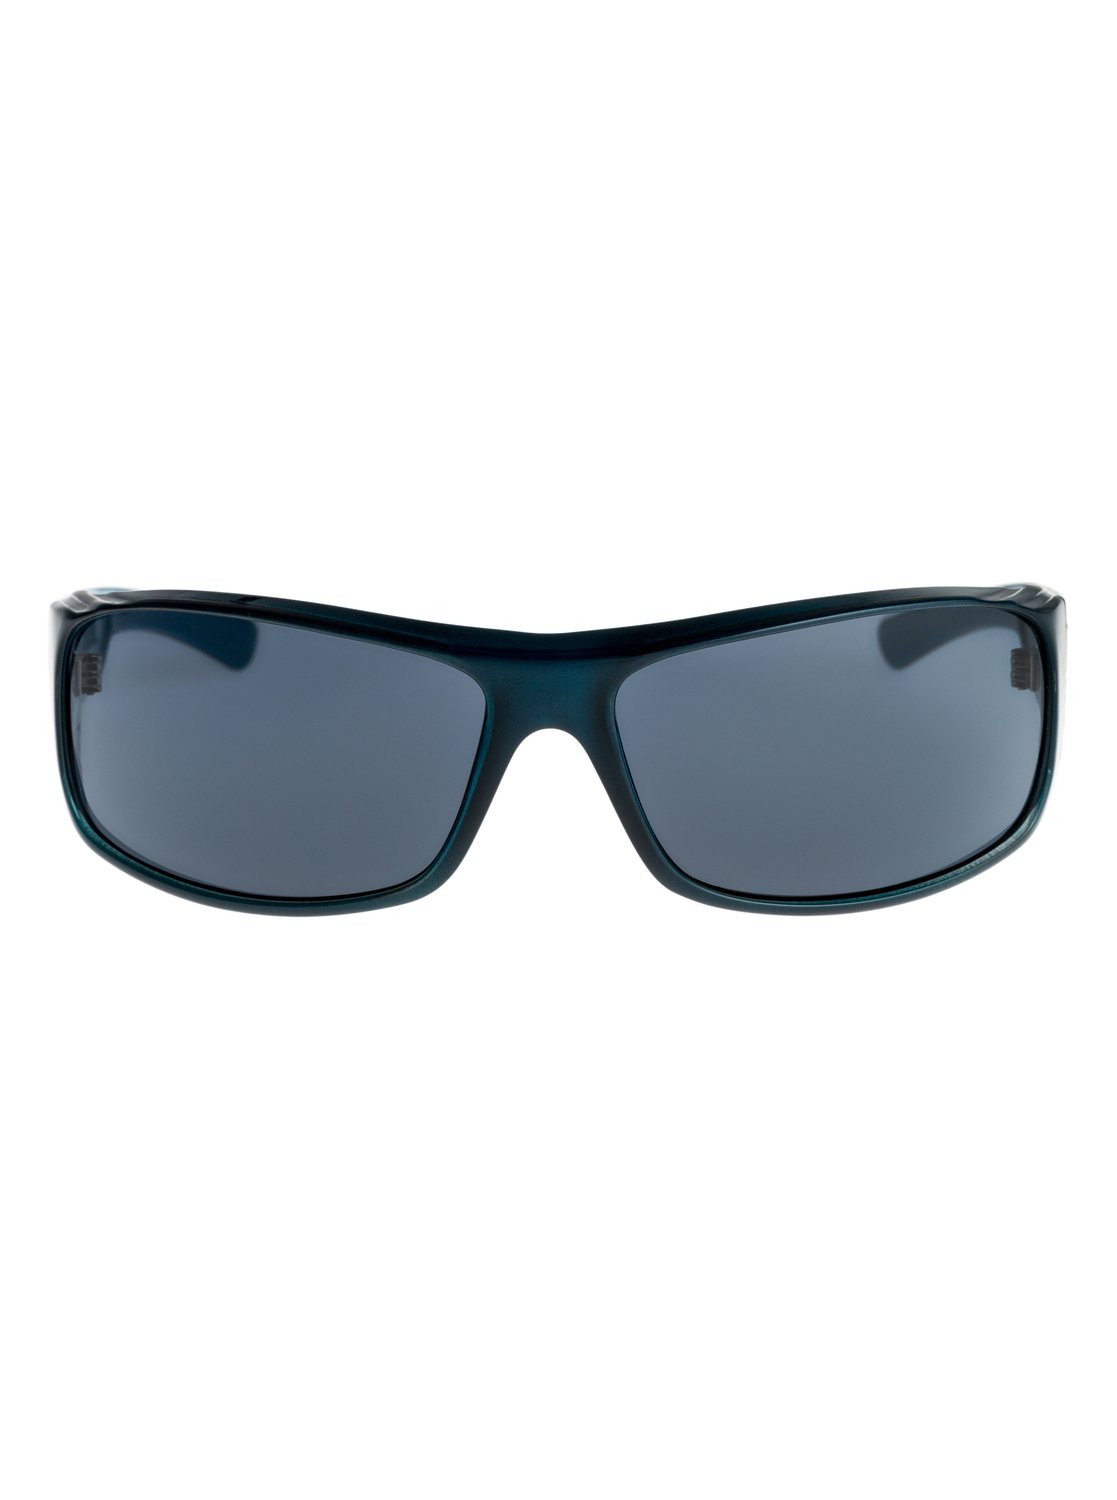 Quiksilver™ The hustle - Sunglasses For Men EQS1117 | eBay